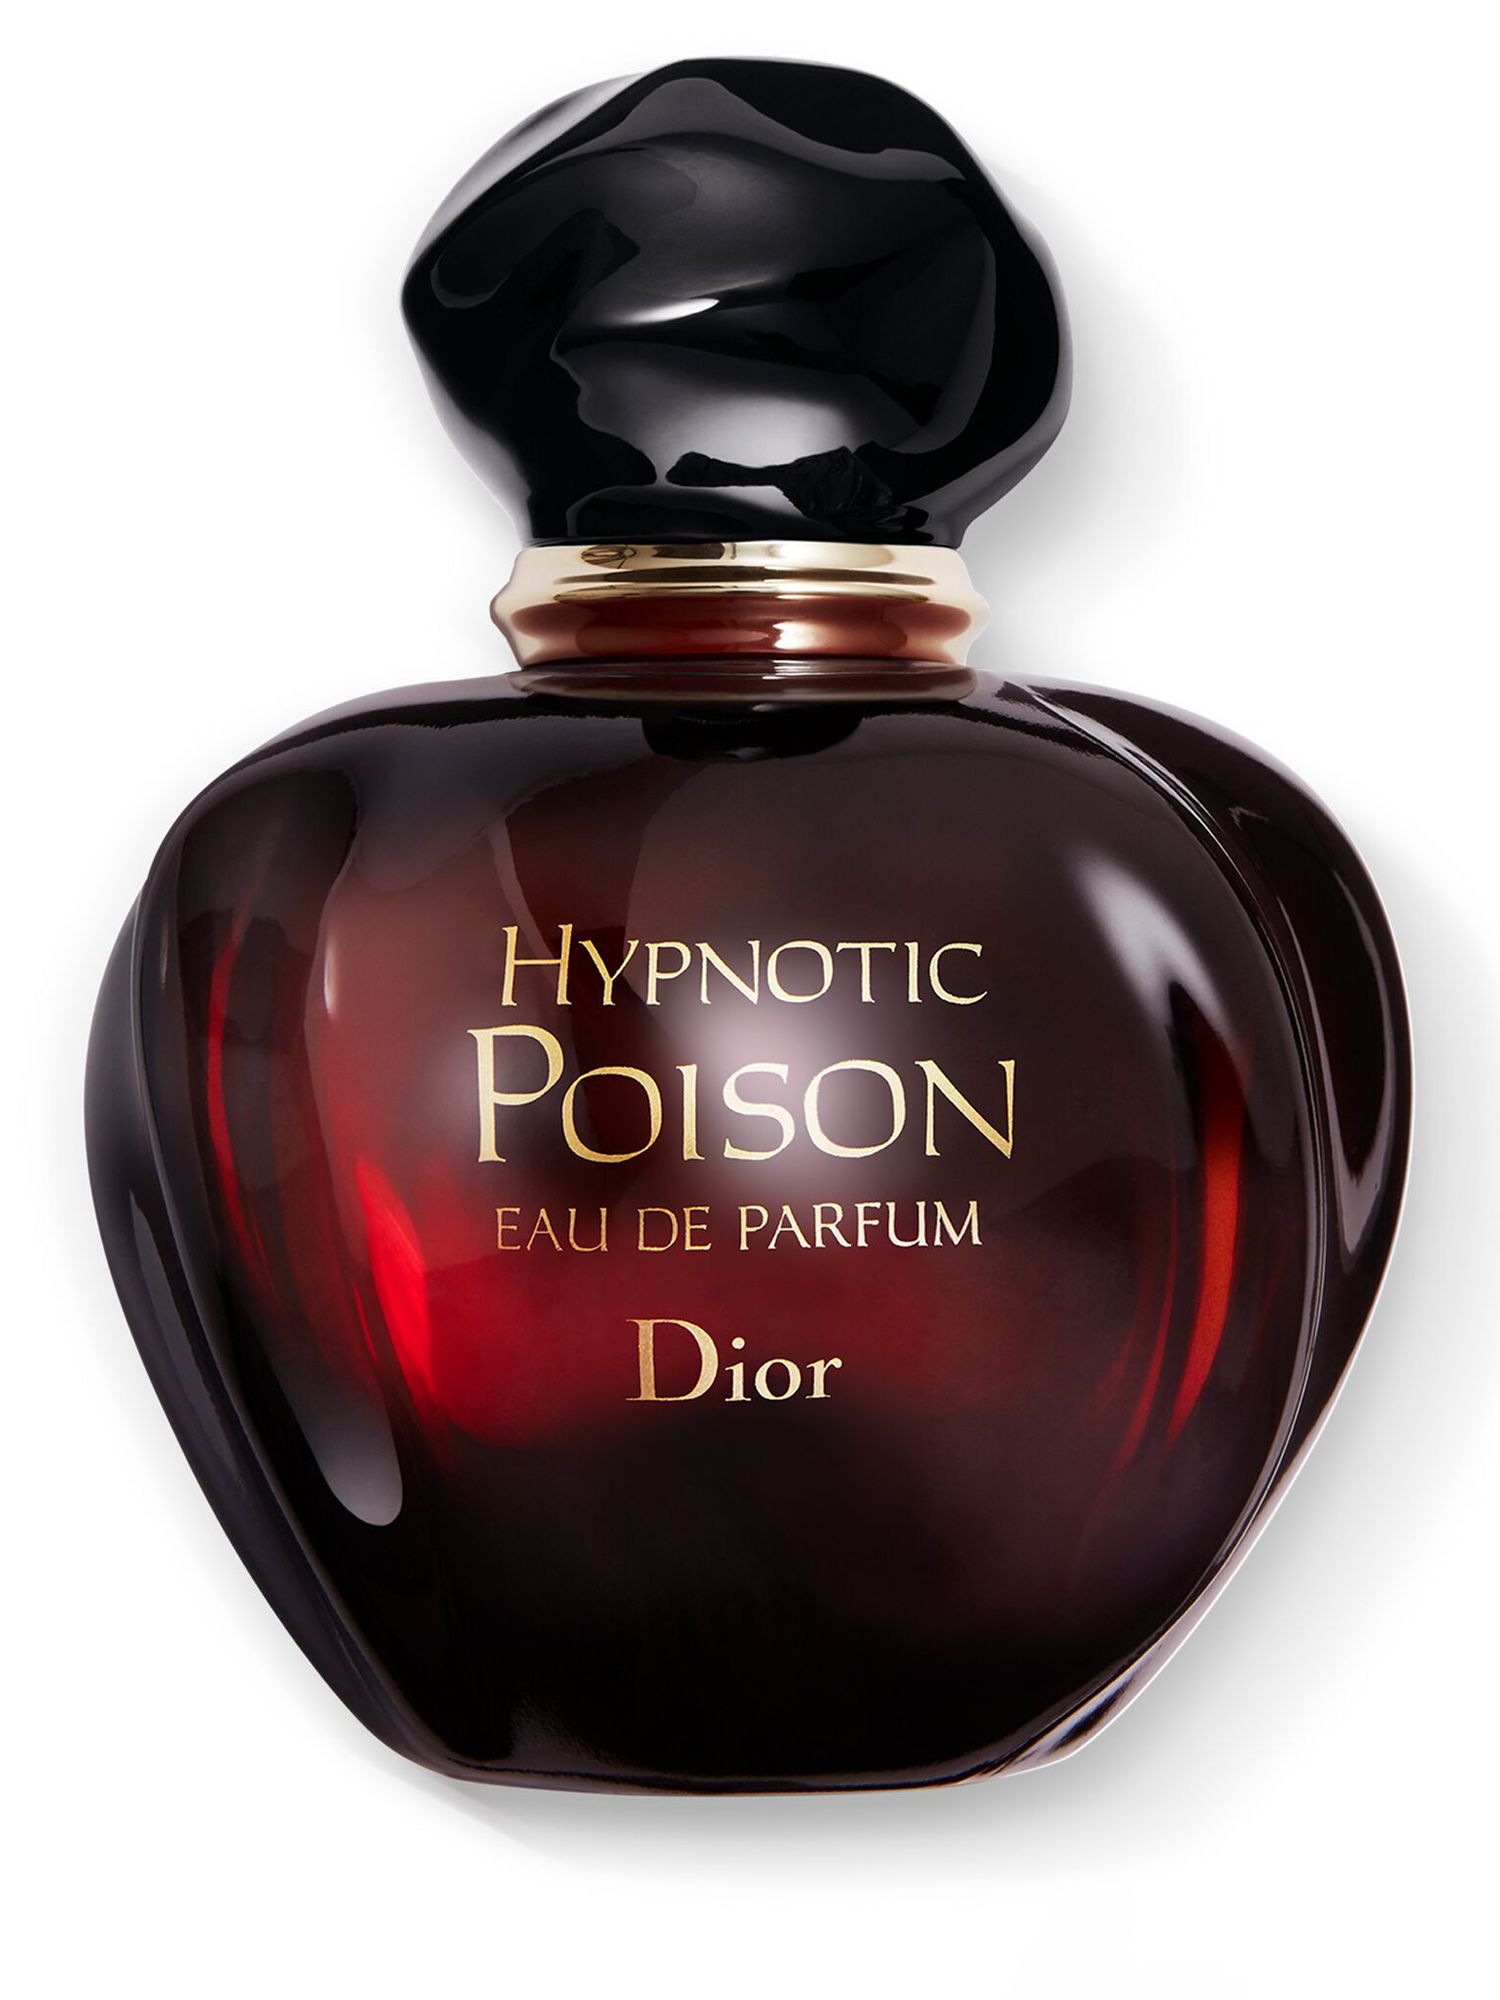 DIOR Hypnotic Poison Eau de Parfum, 50ml at John Lewis & Partners